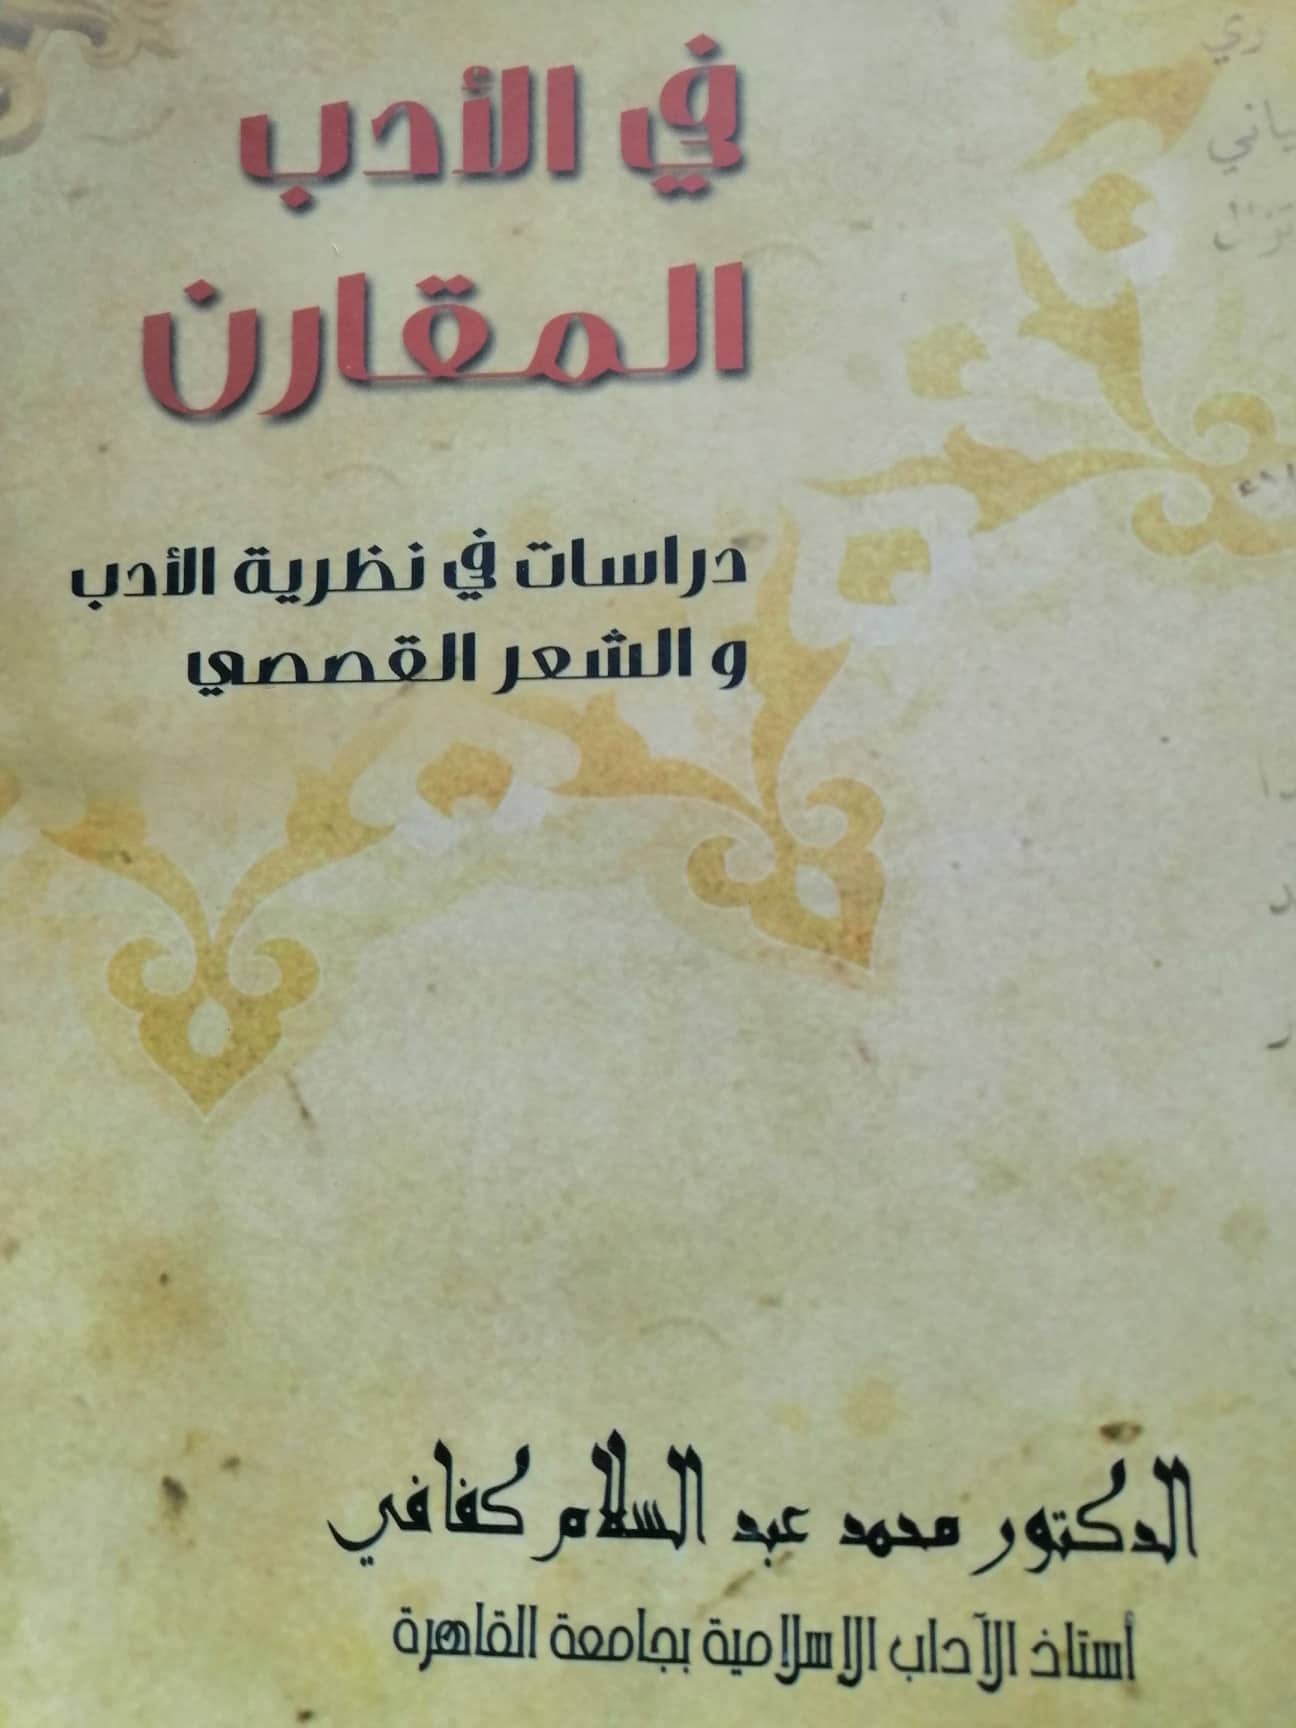 في الأدب المقارن كتاب  للدكتور كفافي يسوق دراسات تفتح نفس القارىء على تذوق الأدب العربي تذوقًا عميقًا حرا